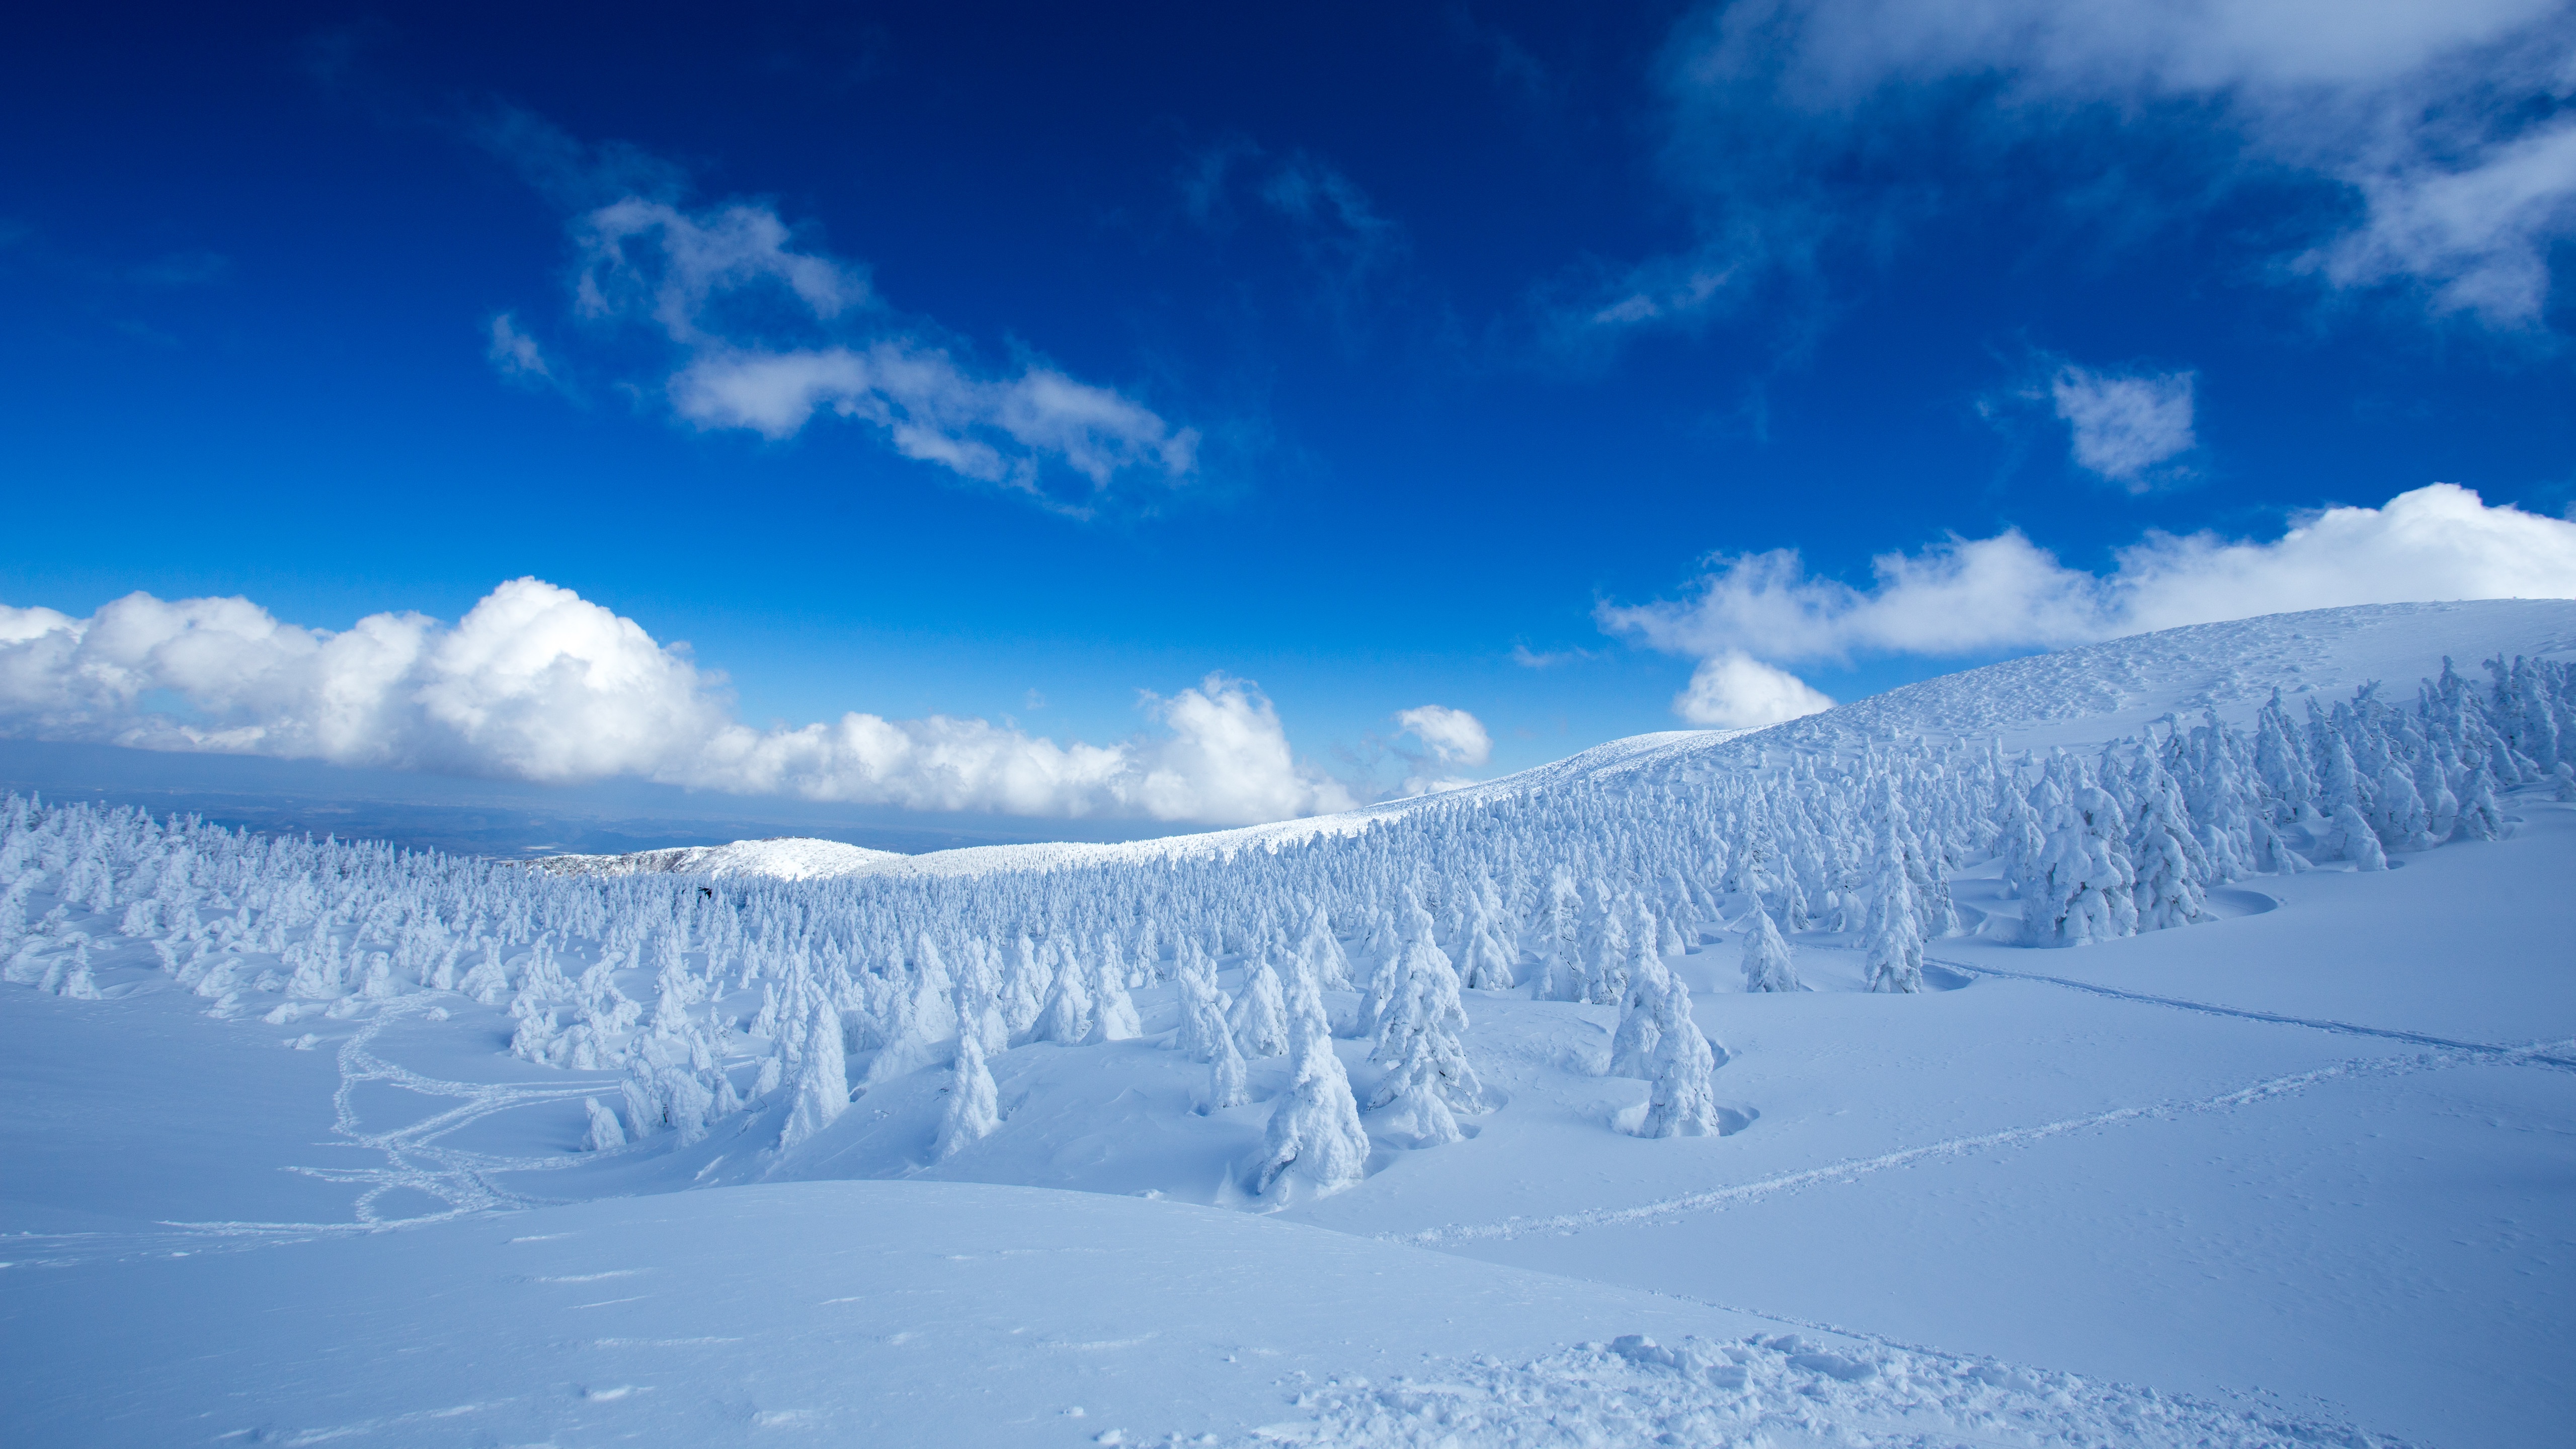 Cloud Forest Landscape Nature Sky Snow Winter 5120x2880